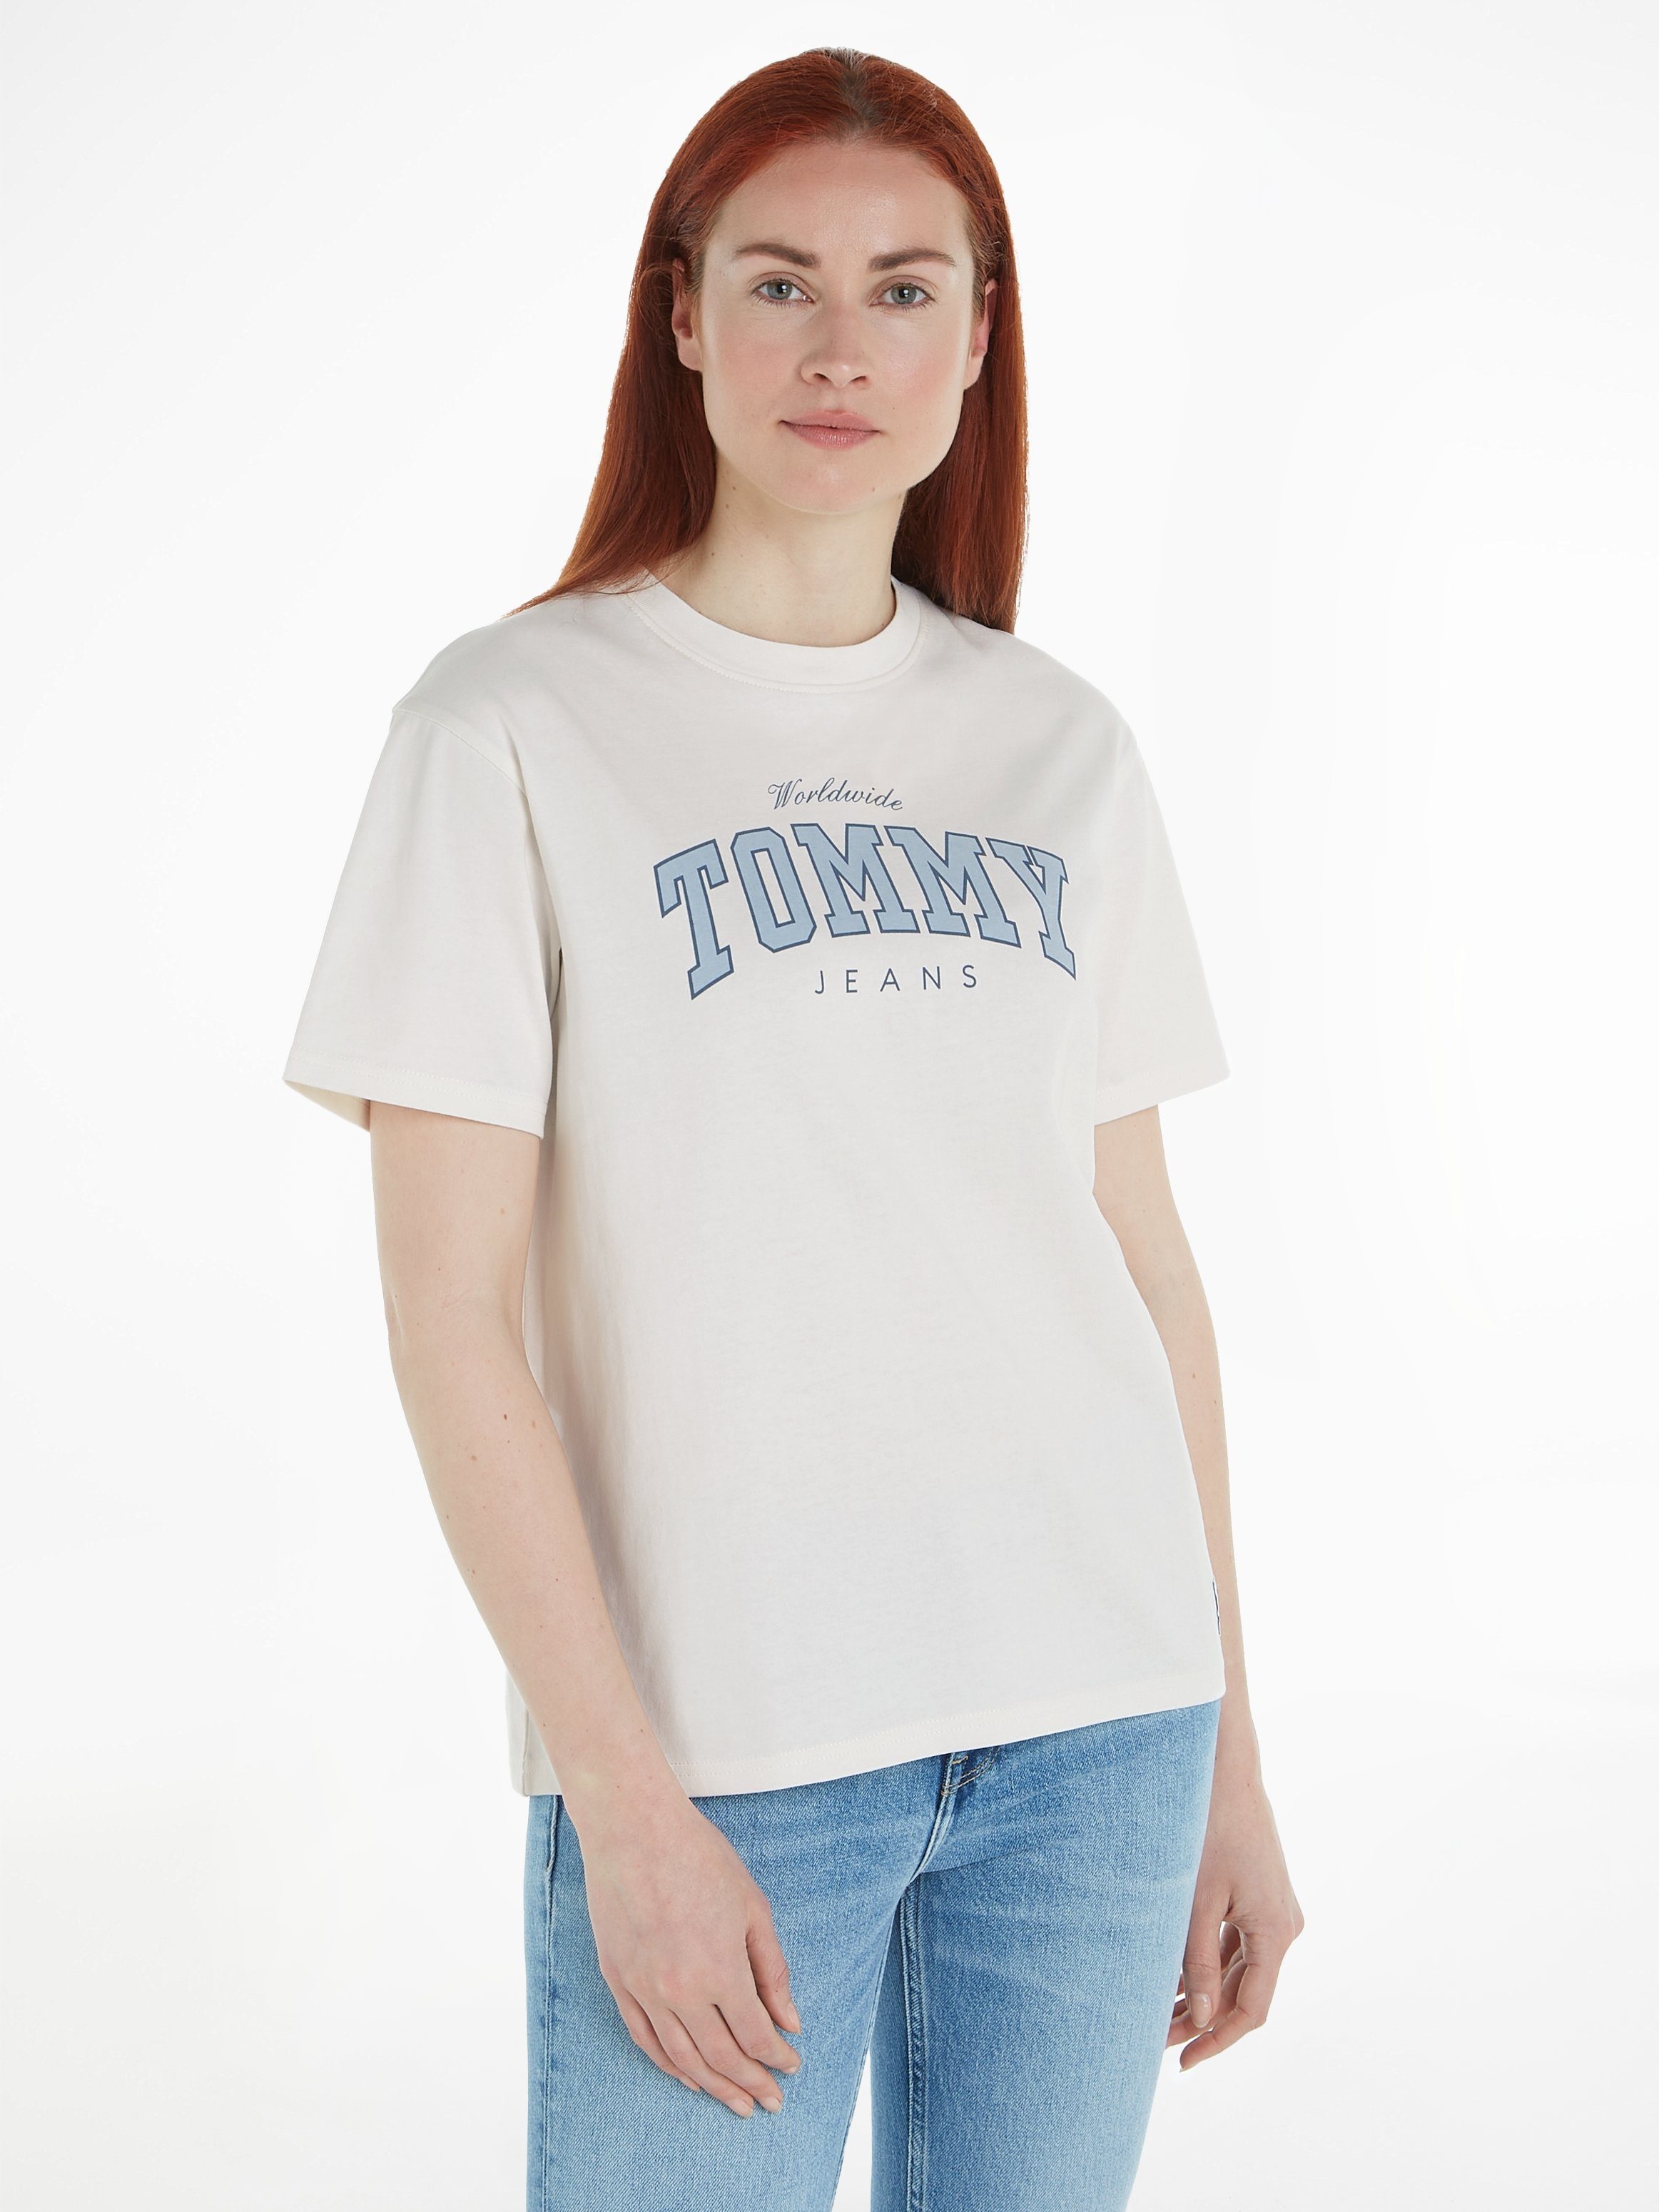 Günstige TOMMY online T-Shirts JEANS Damen kaufen OTTO 